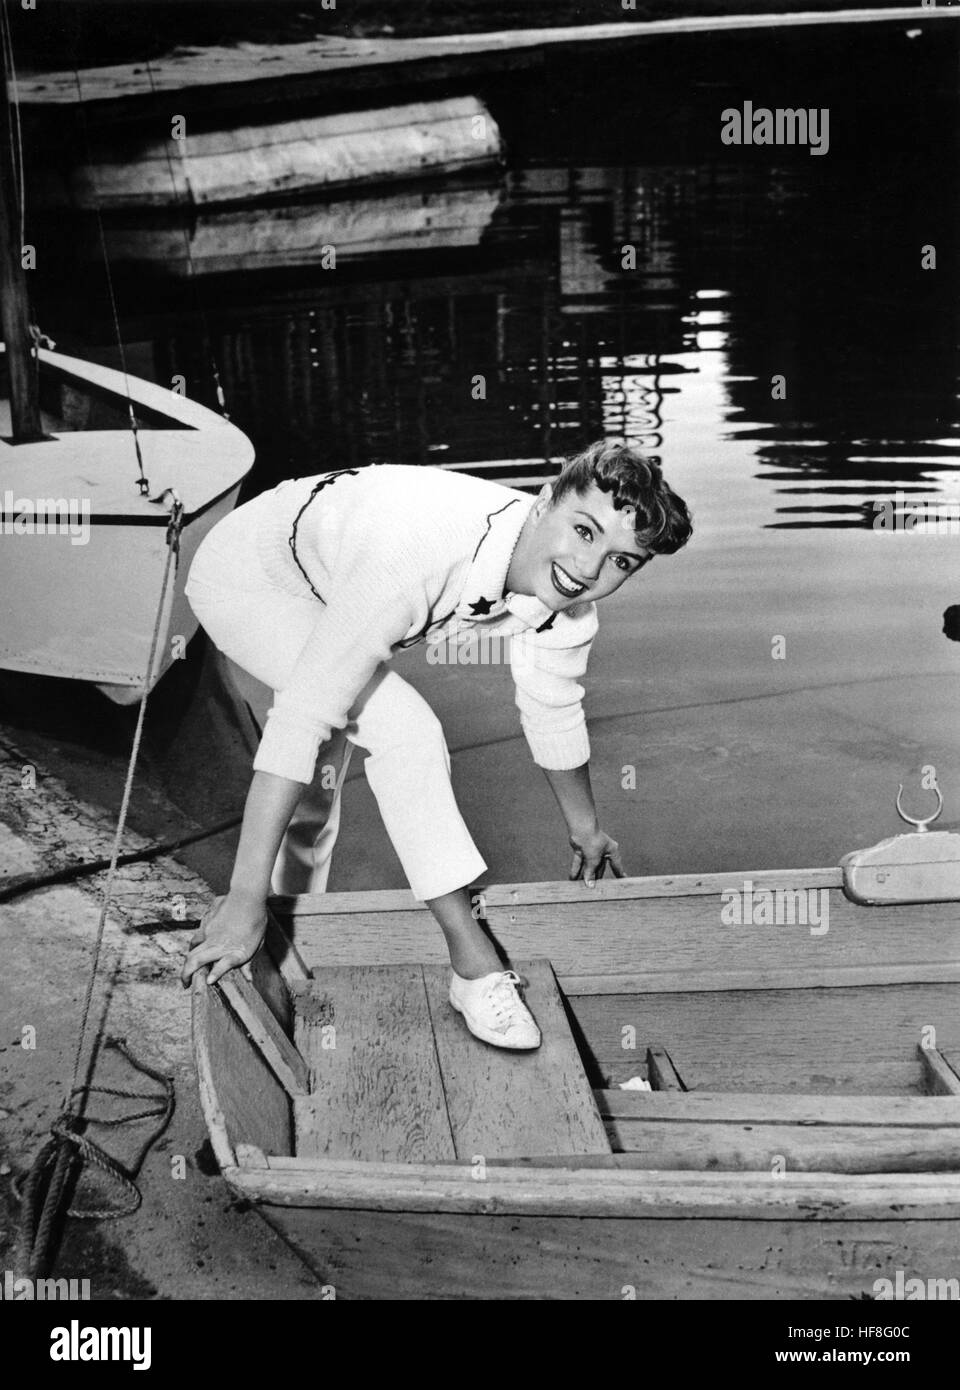 5669993 (9002126) Debbie Reynolds, Schauspielerin und amerikanische Sängerin, posiert neben einem Boot am See. Ort und Datum unbekannt, ca. 1955. | Verwendung weltweit/photo alliance Banque D'Images